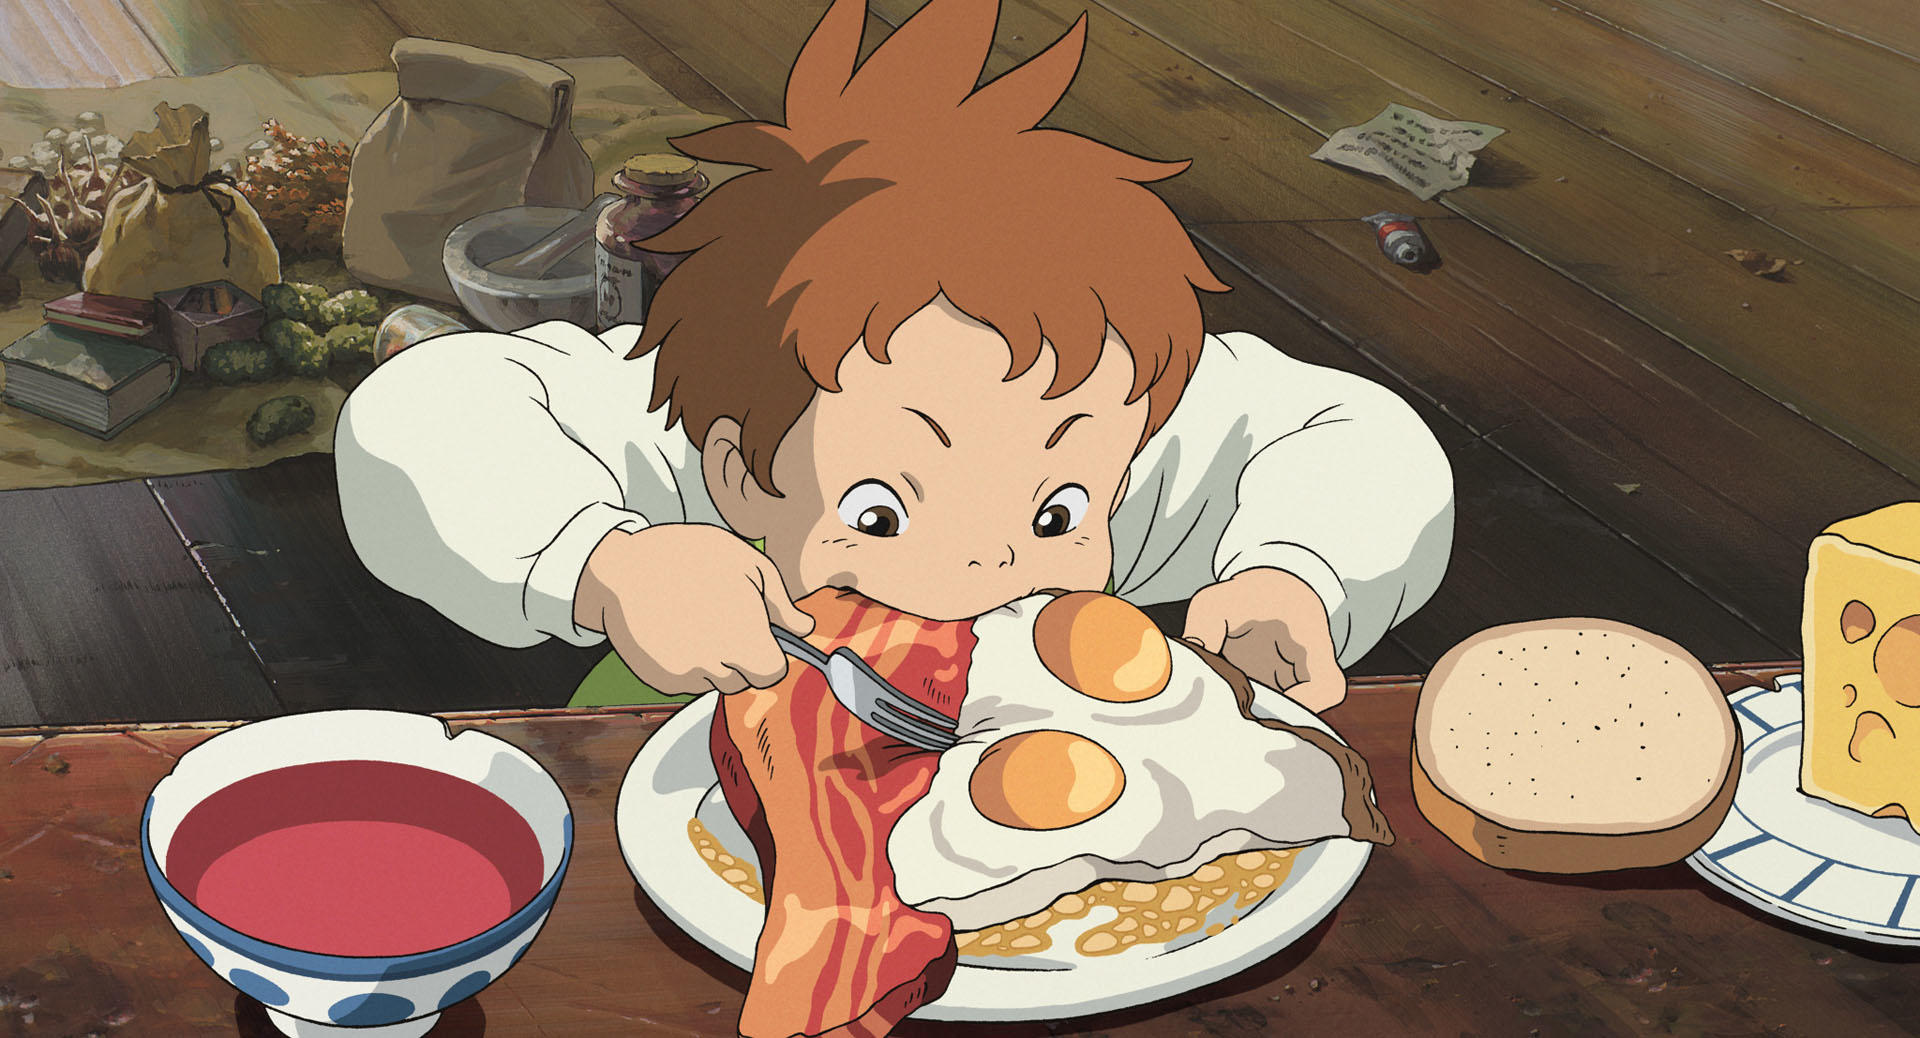 Studio Ghibli representa muchas escenas alrededor de la comida